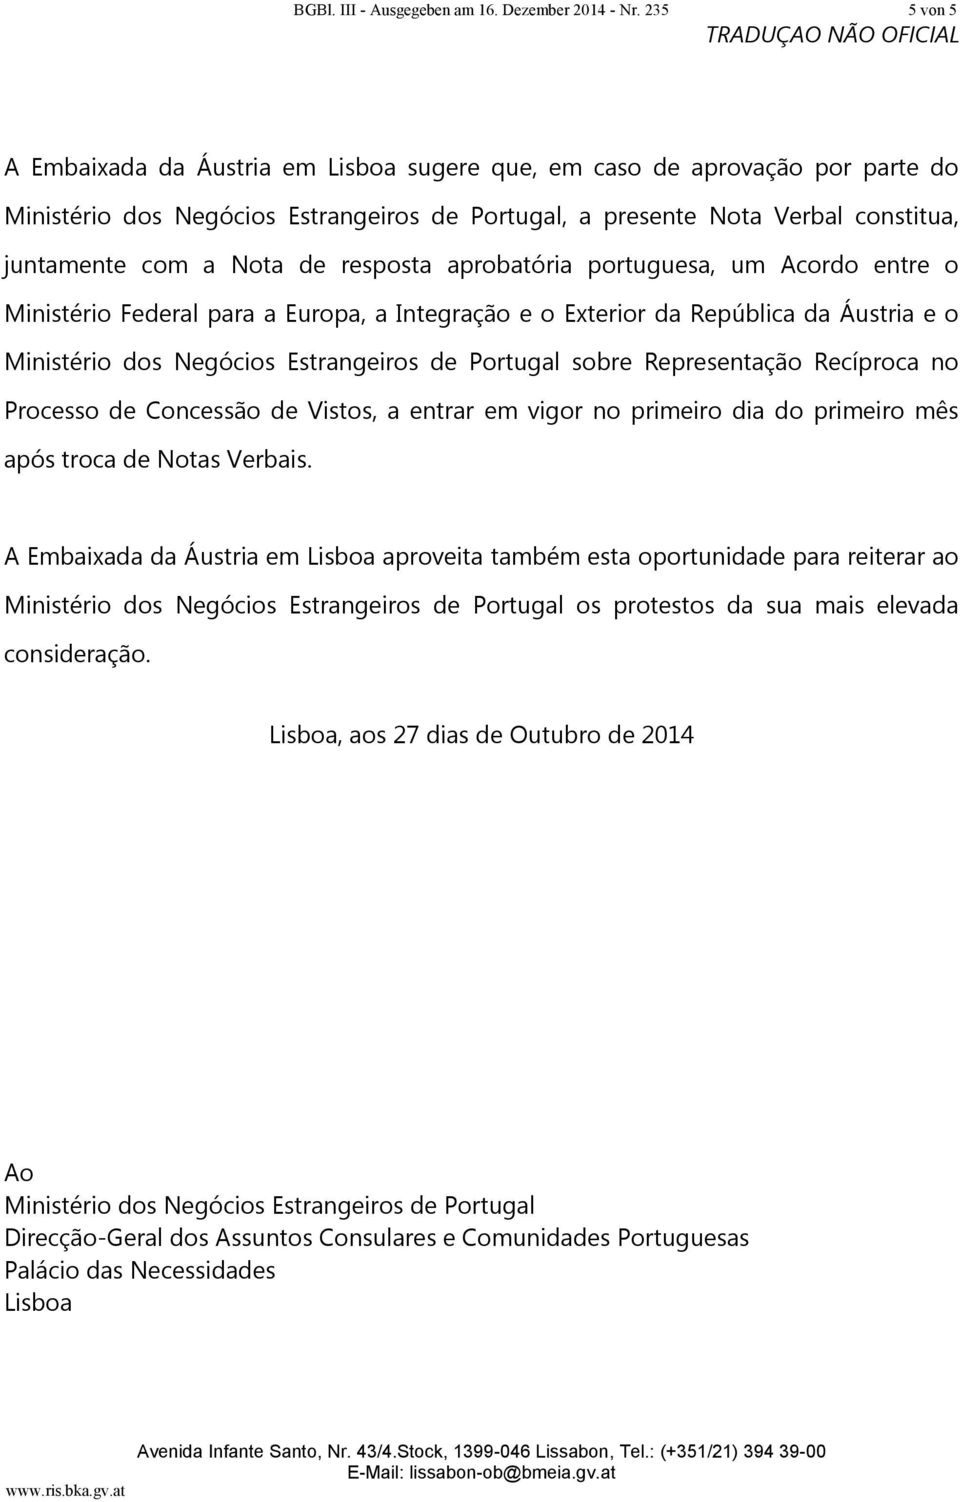 resposta aprobatória portuguesa, um Acordo entre o Ministério Federal para a Europa, a Integração e o Exterior da República da Áustria e o Ministério dos Negócios Estrangeiros de Portugal sobre